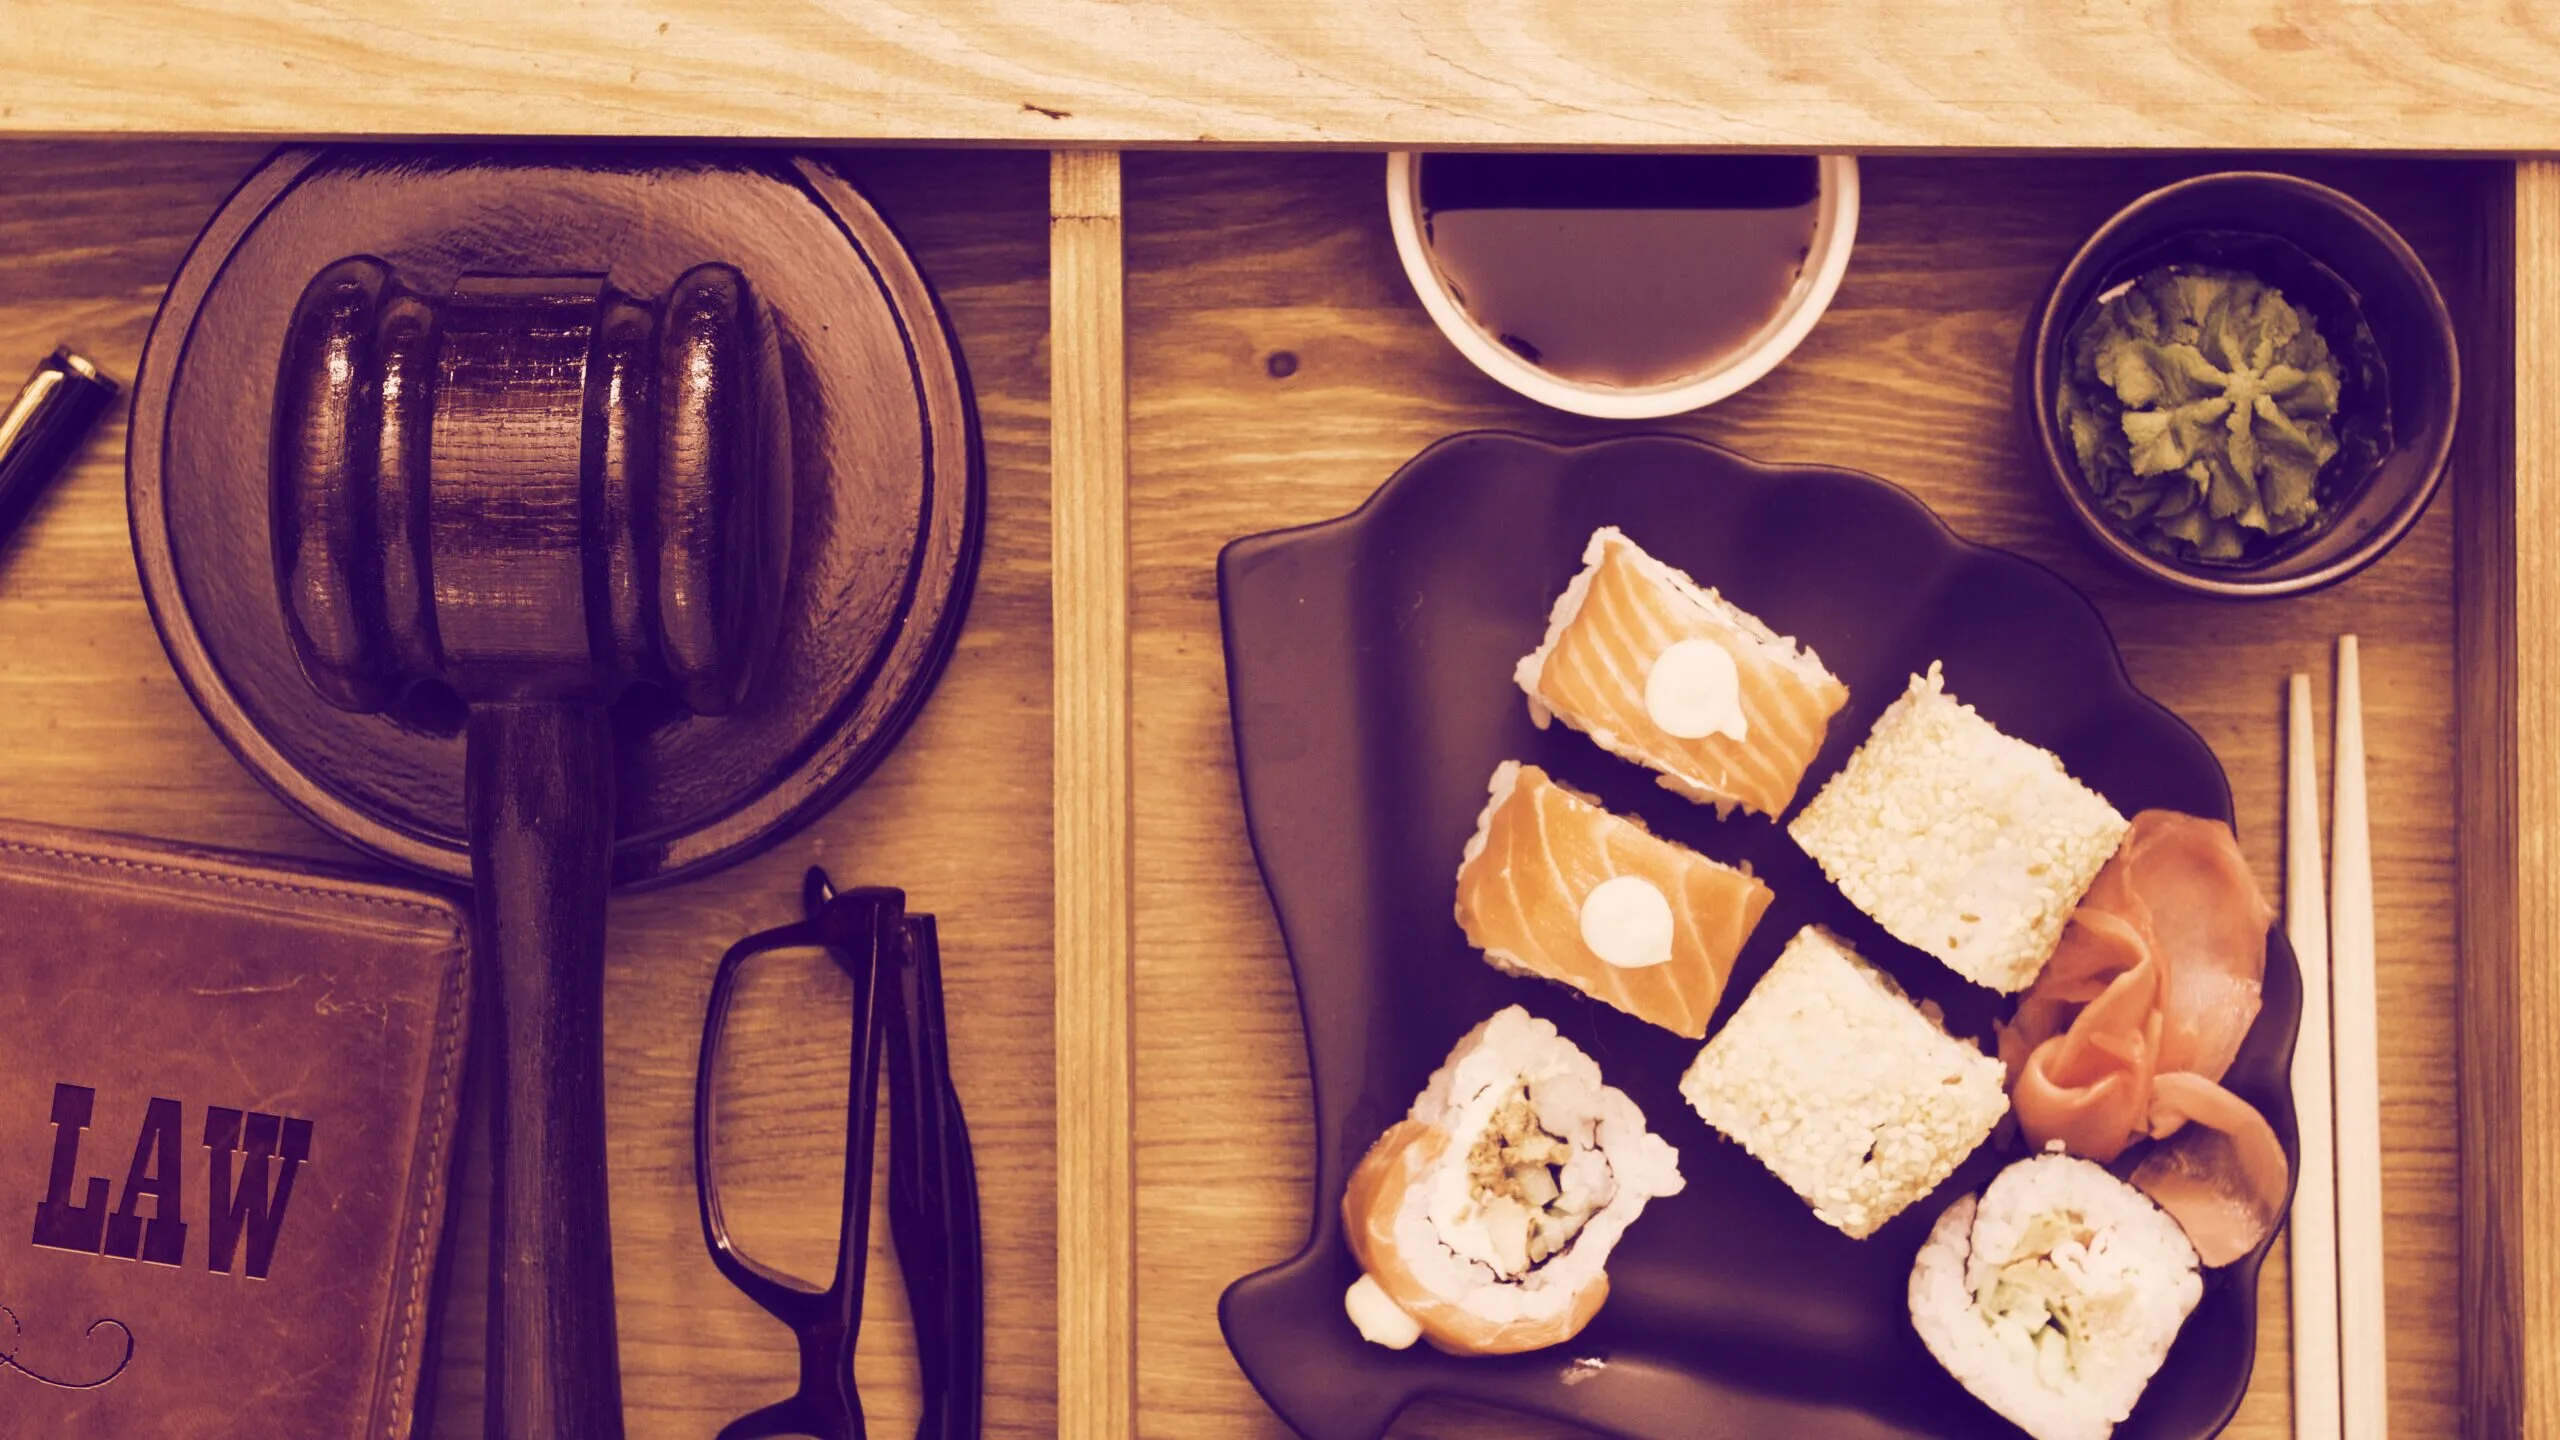 ¿Vendrá todo el poder de la ley a aplastar al Sushi? Imagen: Shutterstock